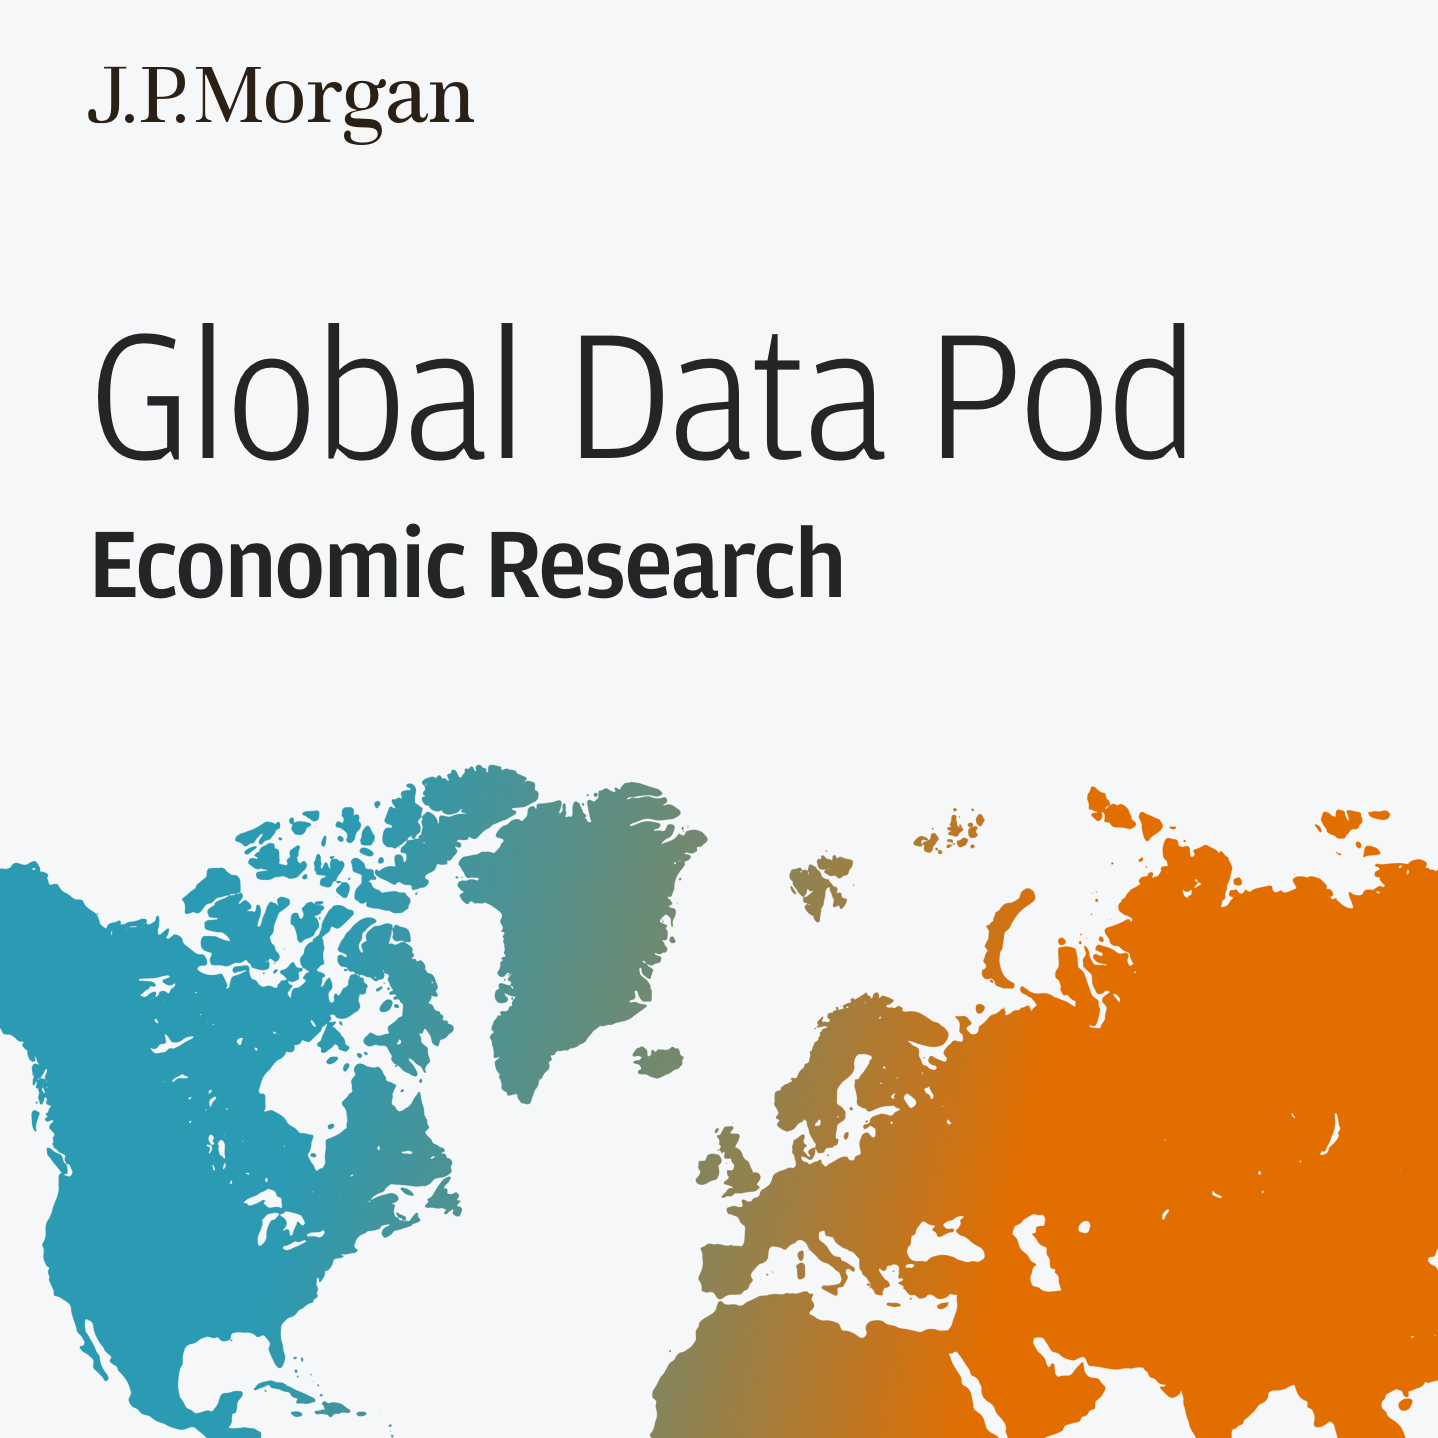 Global Data Pod